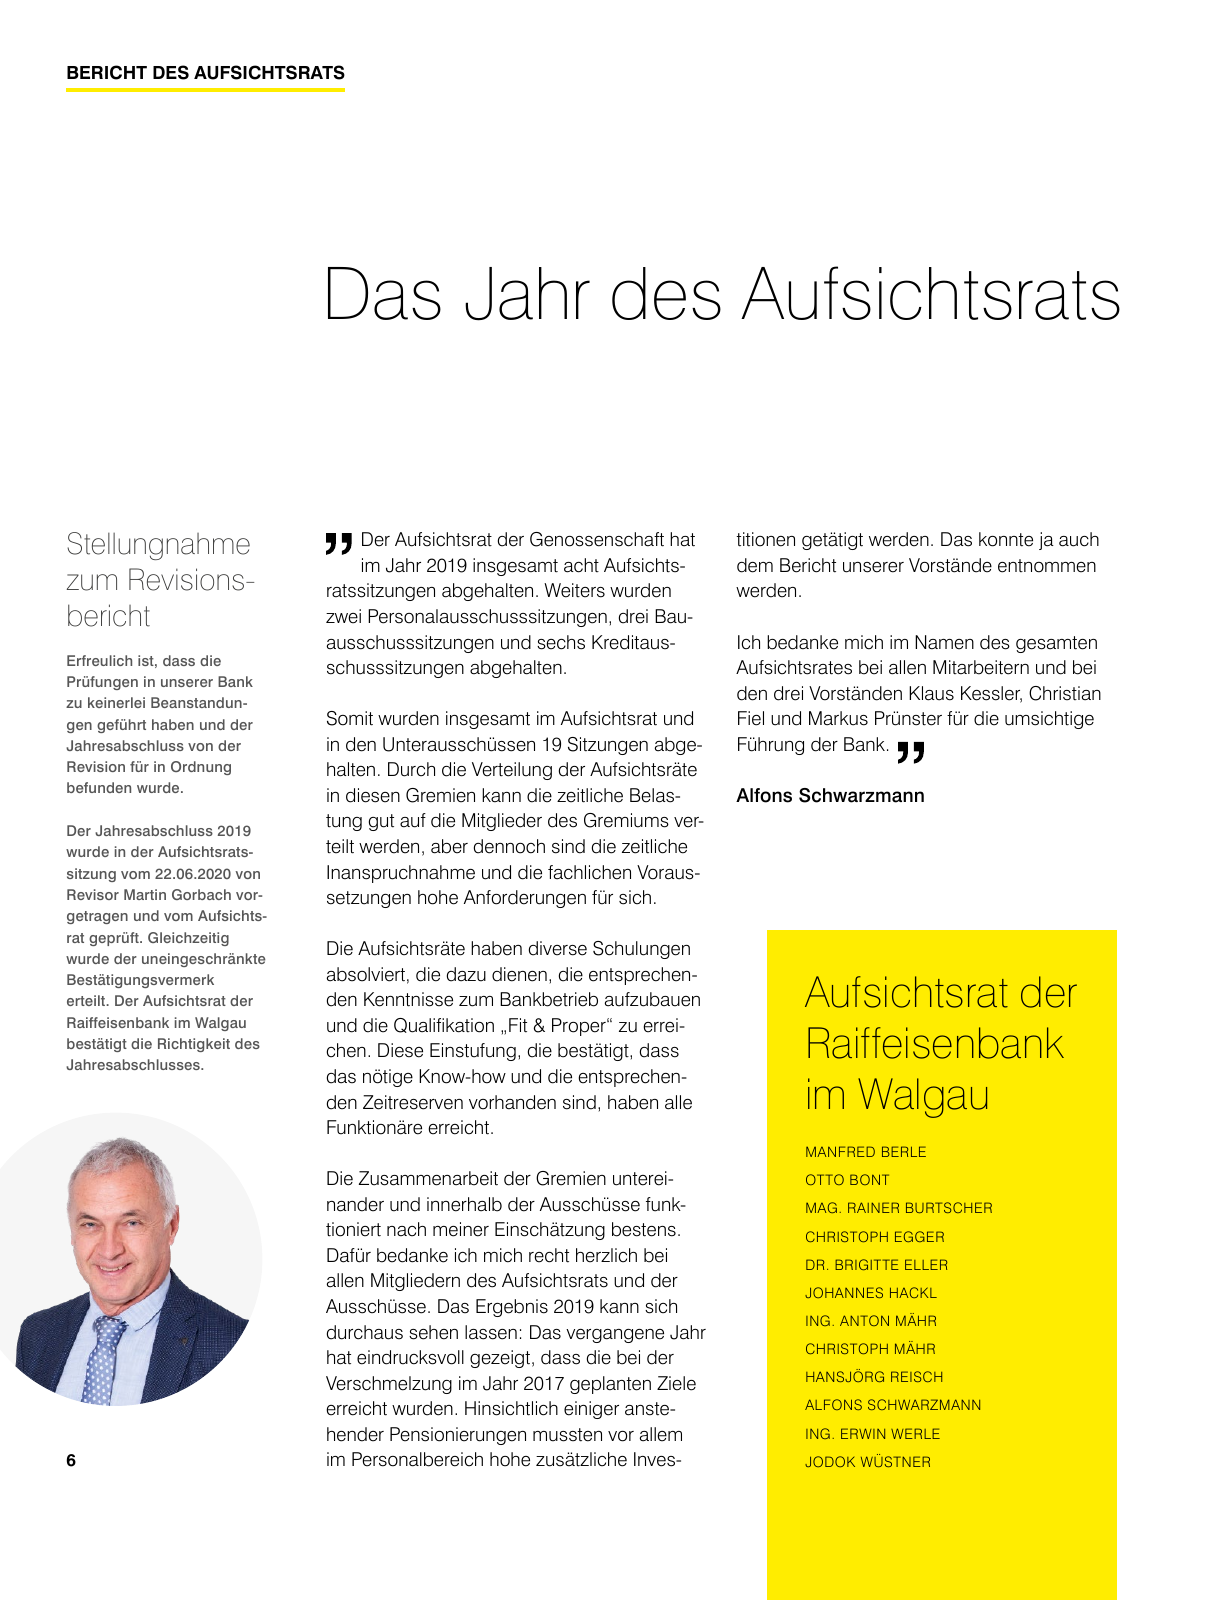 Vorschau Geschäftsbericht RB im Walgau Seite 6